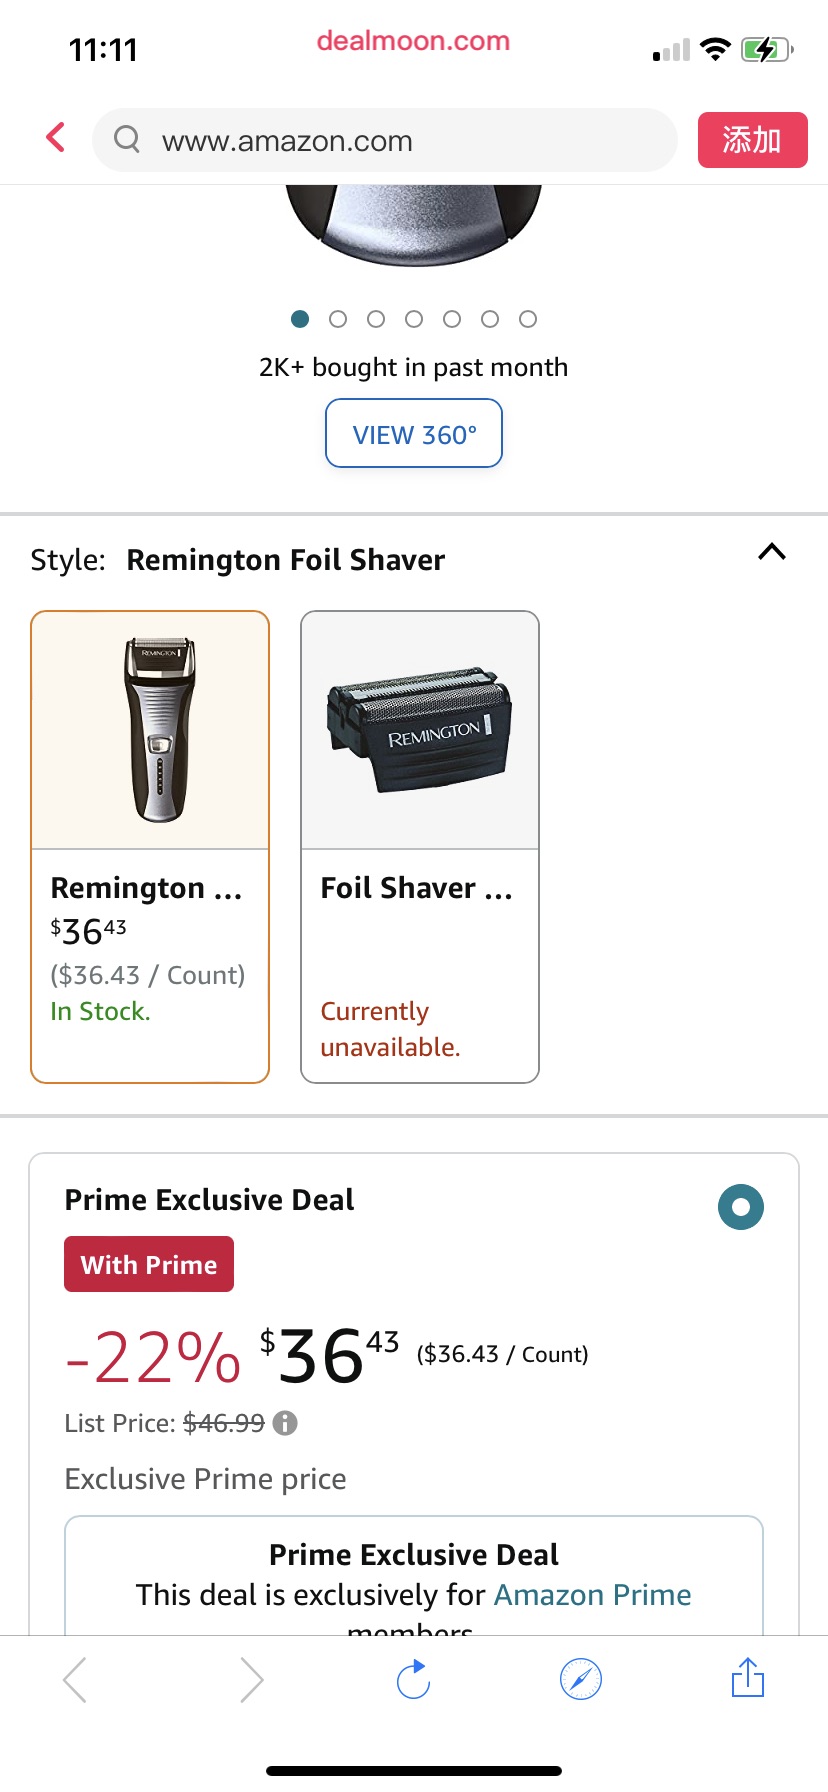 Amazon.com: Remington Foil Shaver, Electric Razor for Men, Cordless Rechargeable with Pop Up Trimmer, Pivot & FlexFoil Technology, Lightweight Handheld Design, Black : Beauty & 电动剃须刀